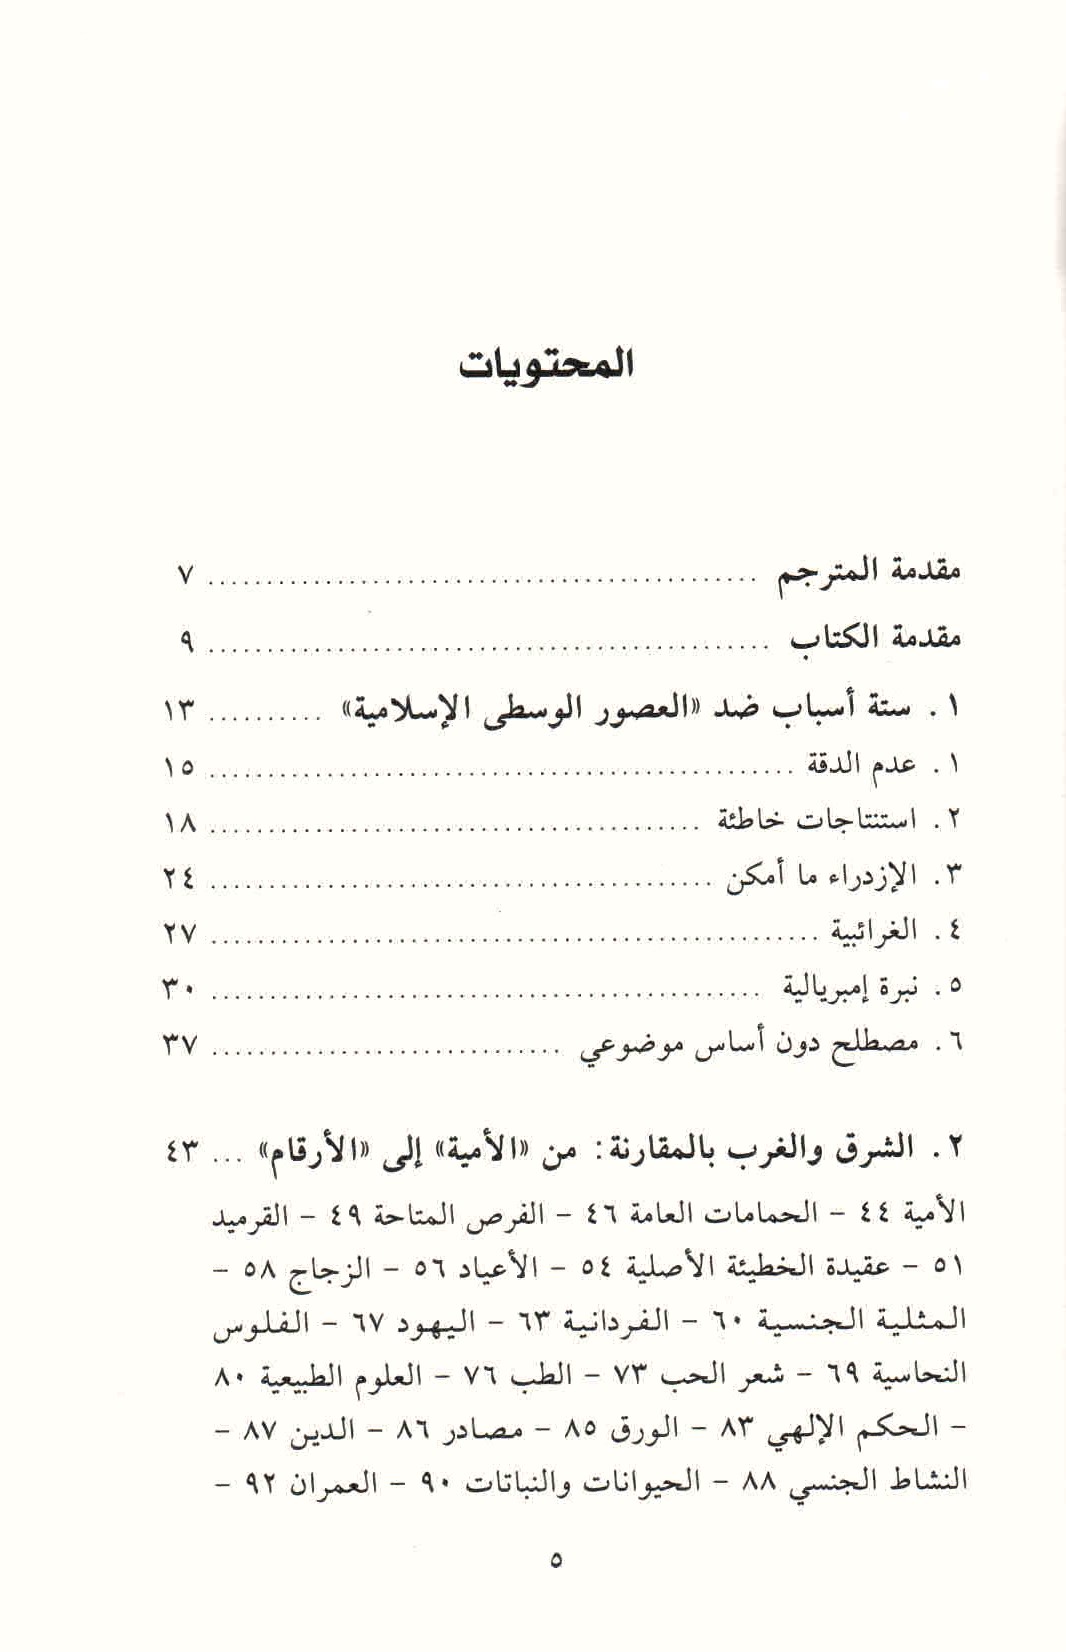 ص. 5 قائمة محتويات كتاب لماذا لم توجد عصور وسطى إسلامية؟